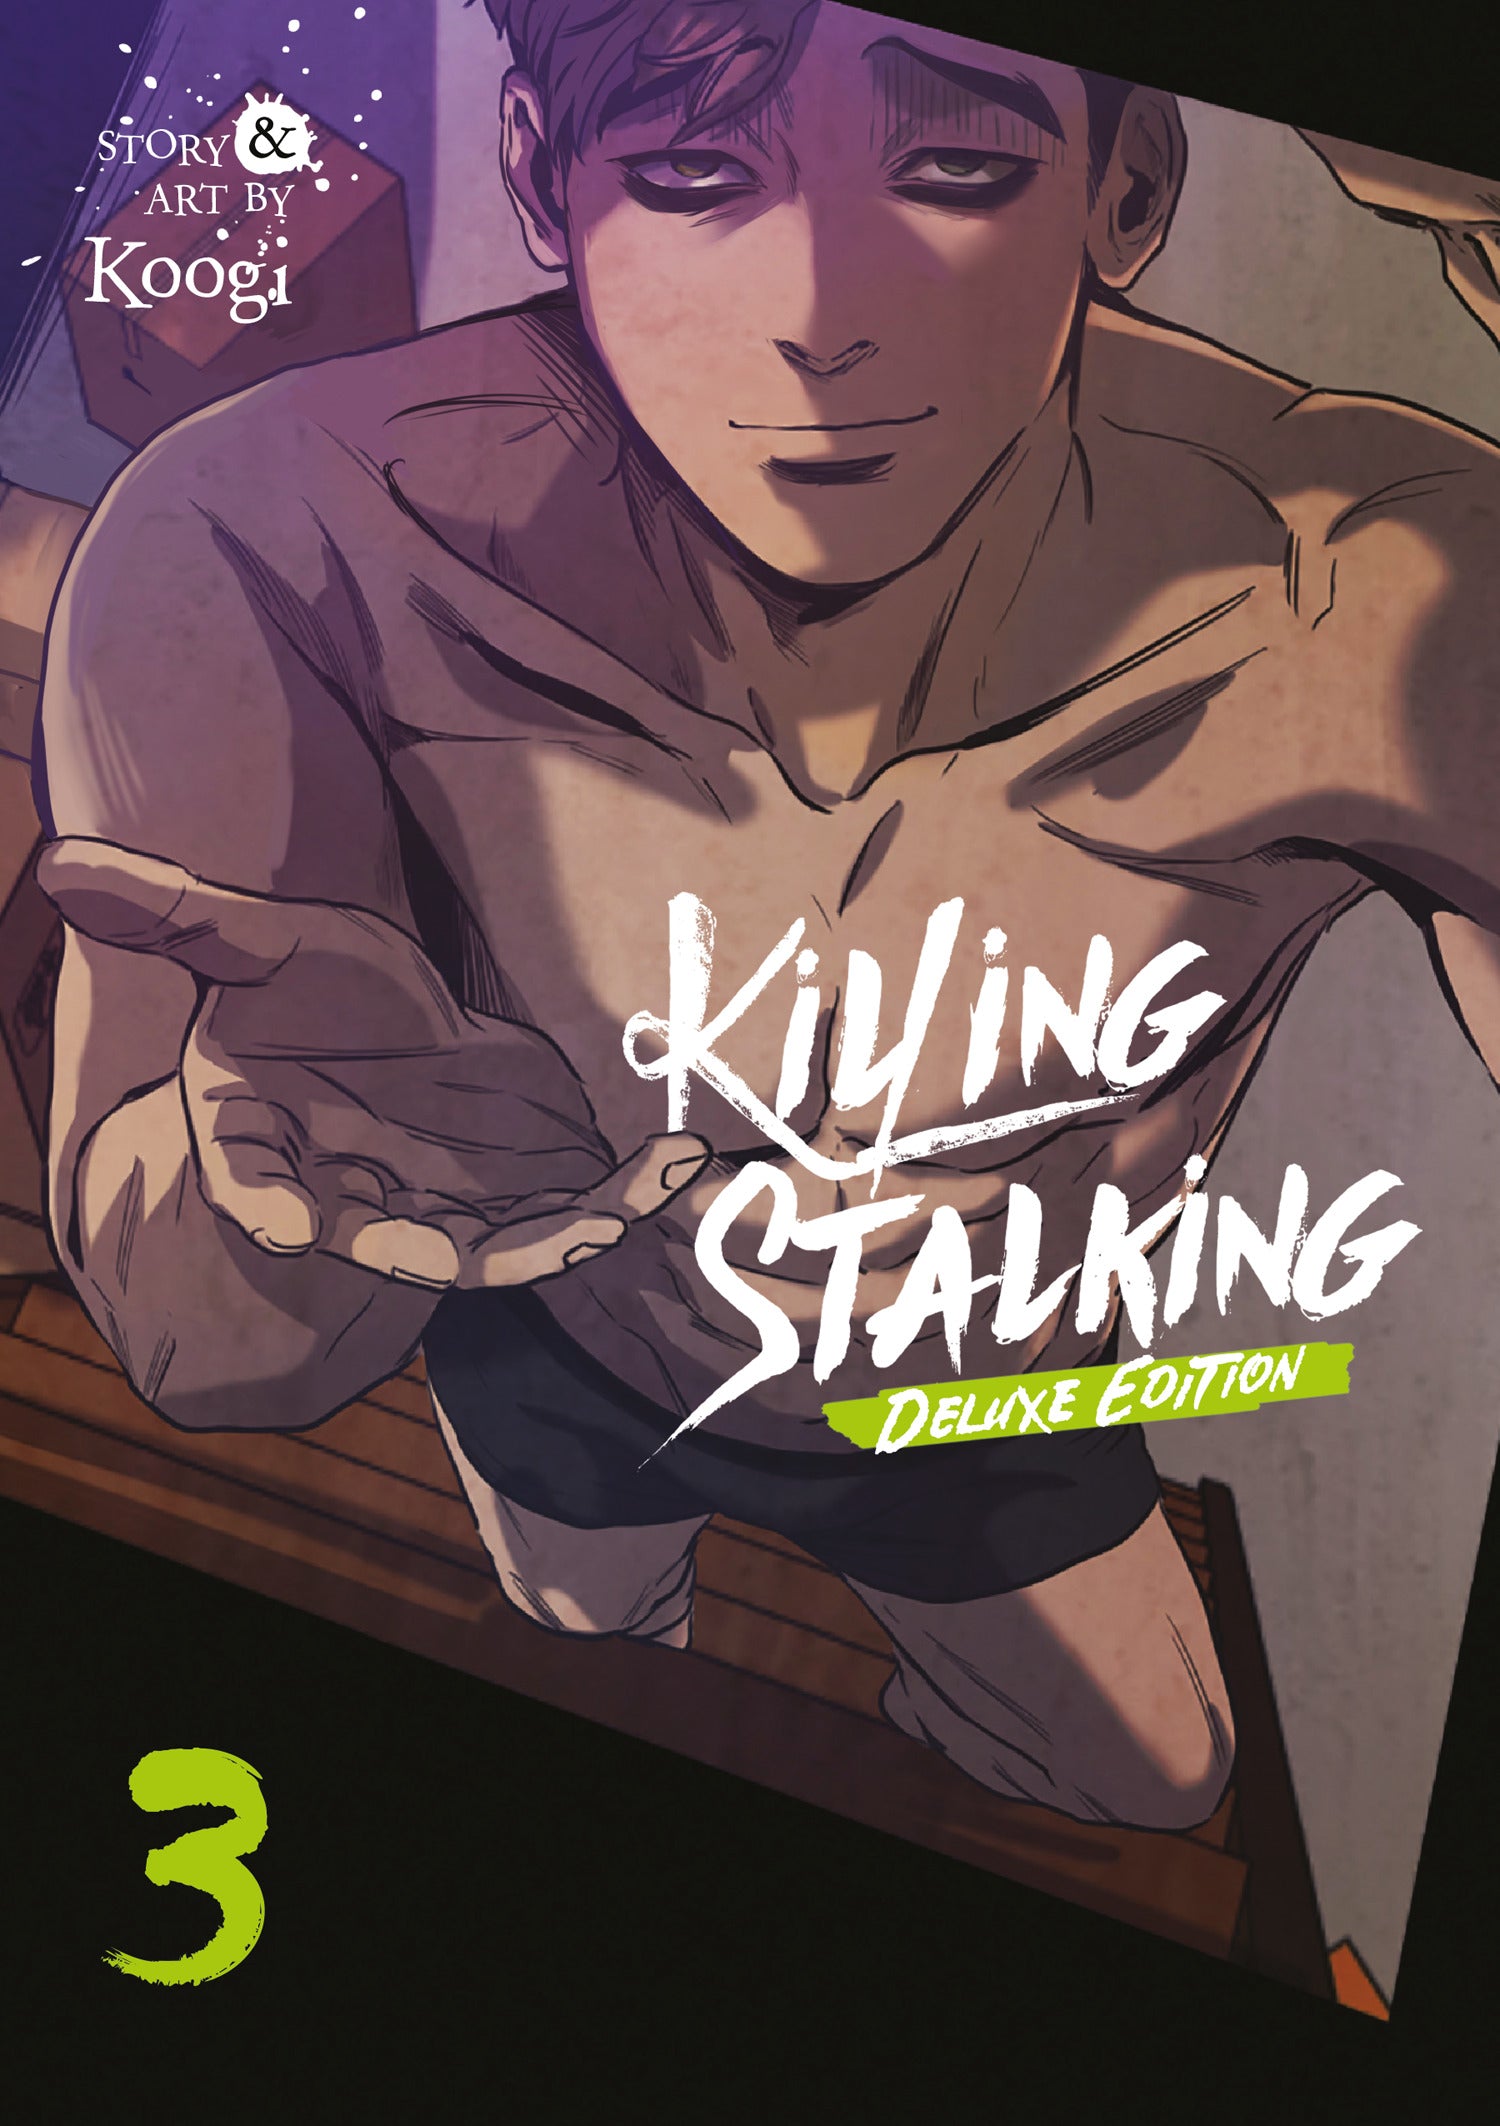 KILLING STALKING SEASON 3 - VOLUME 5 Comics Manga J-POP EDITORE